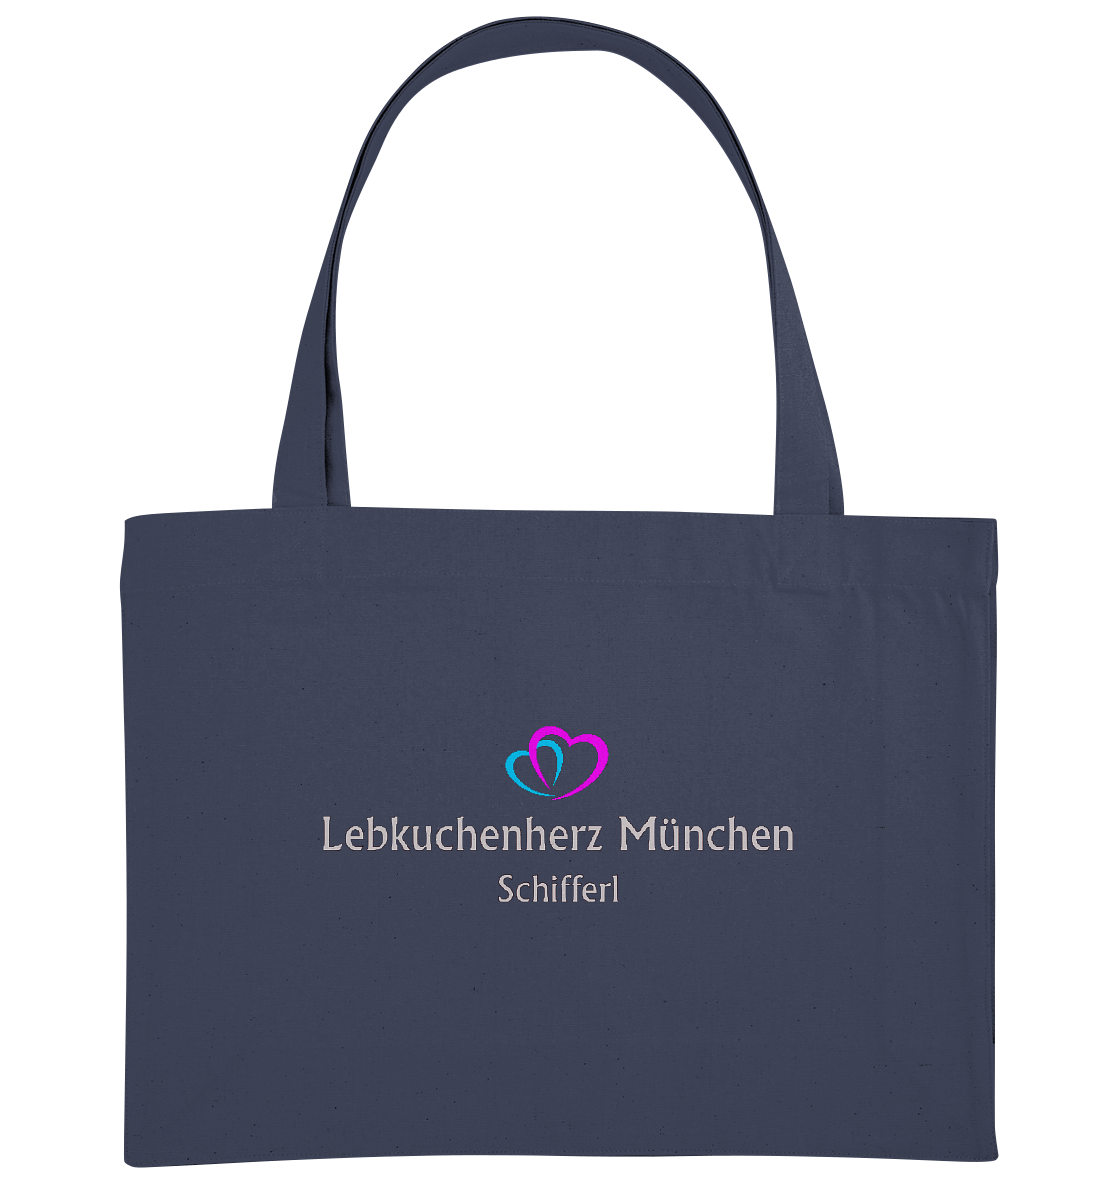 Baumwolltasche mit eigenem Logo 1 - Organic Shopping-Bag - Online Kaufhaus München